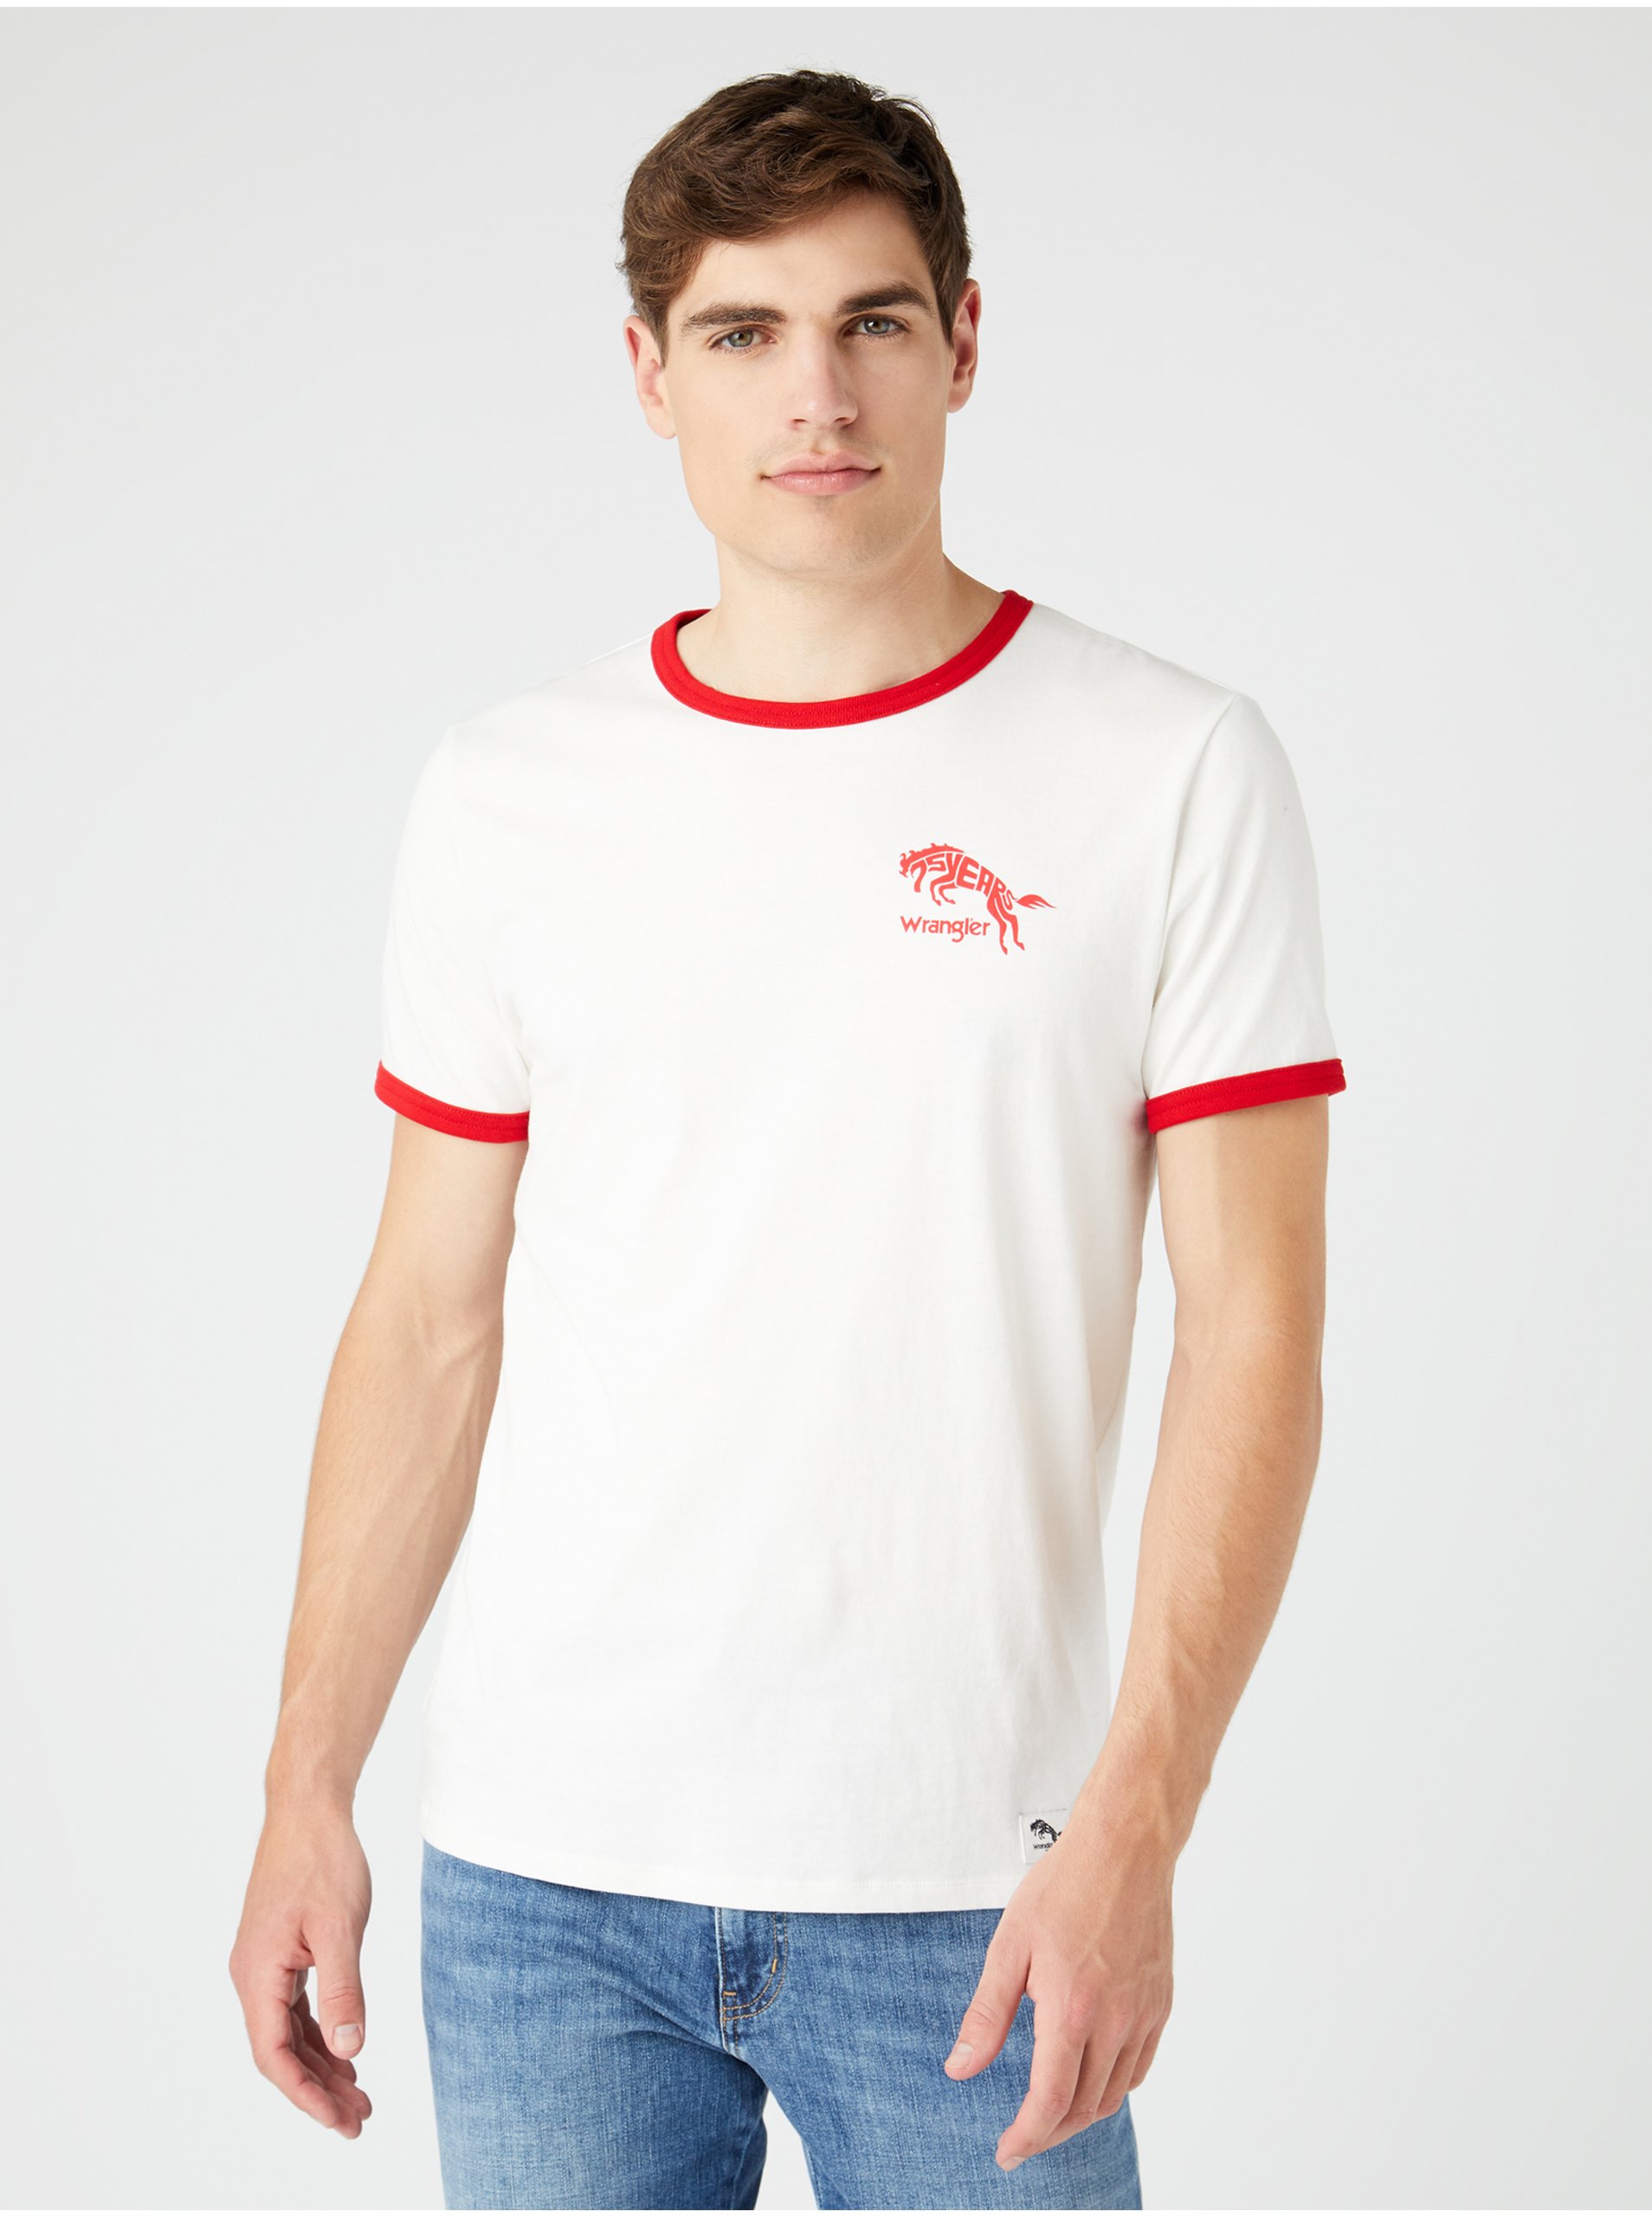 Lacno Červeno-biele pánske tričko s potlačou Wrangler